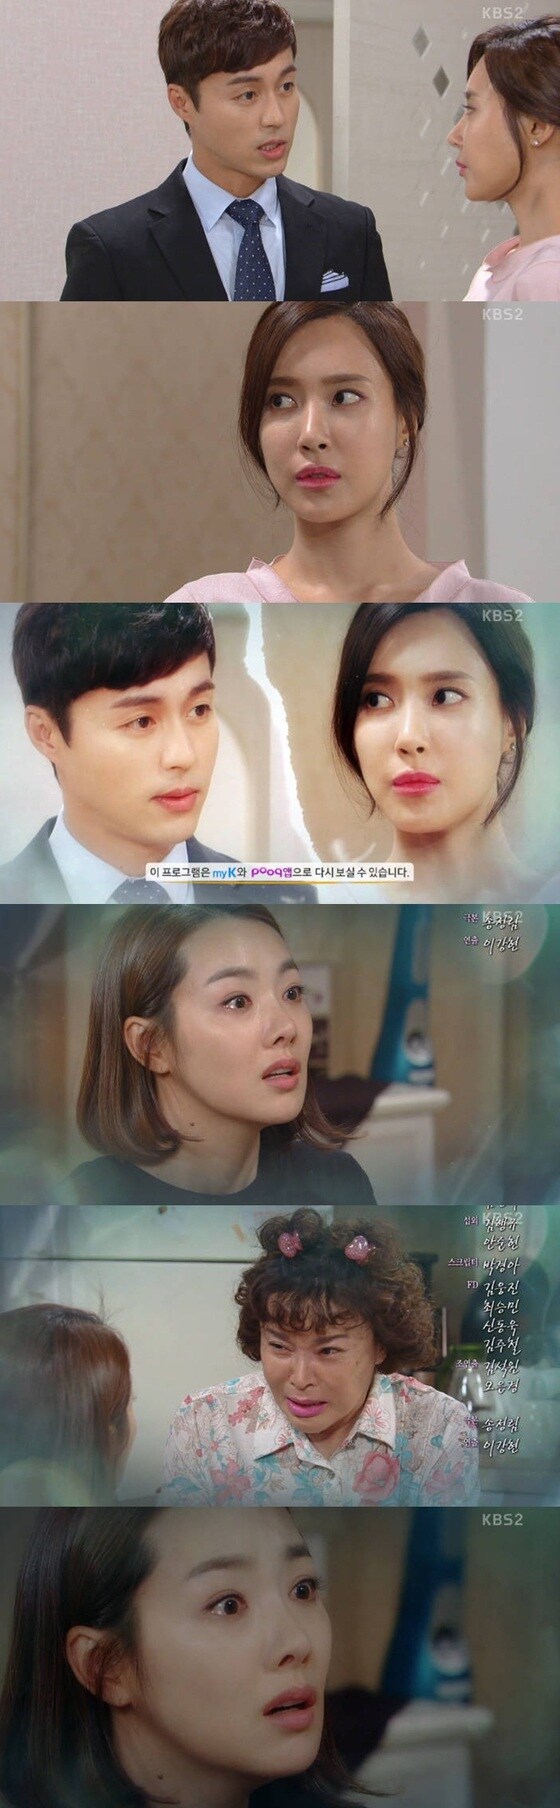 오민석이 김윤서에게 이혼을 종용했다. © News1star / KBS2 '여자의 비밀' 캡처